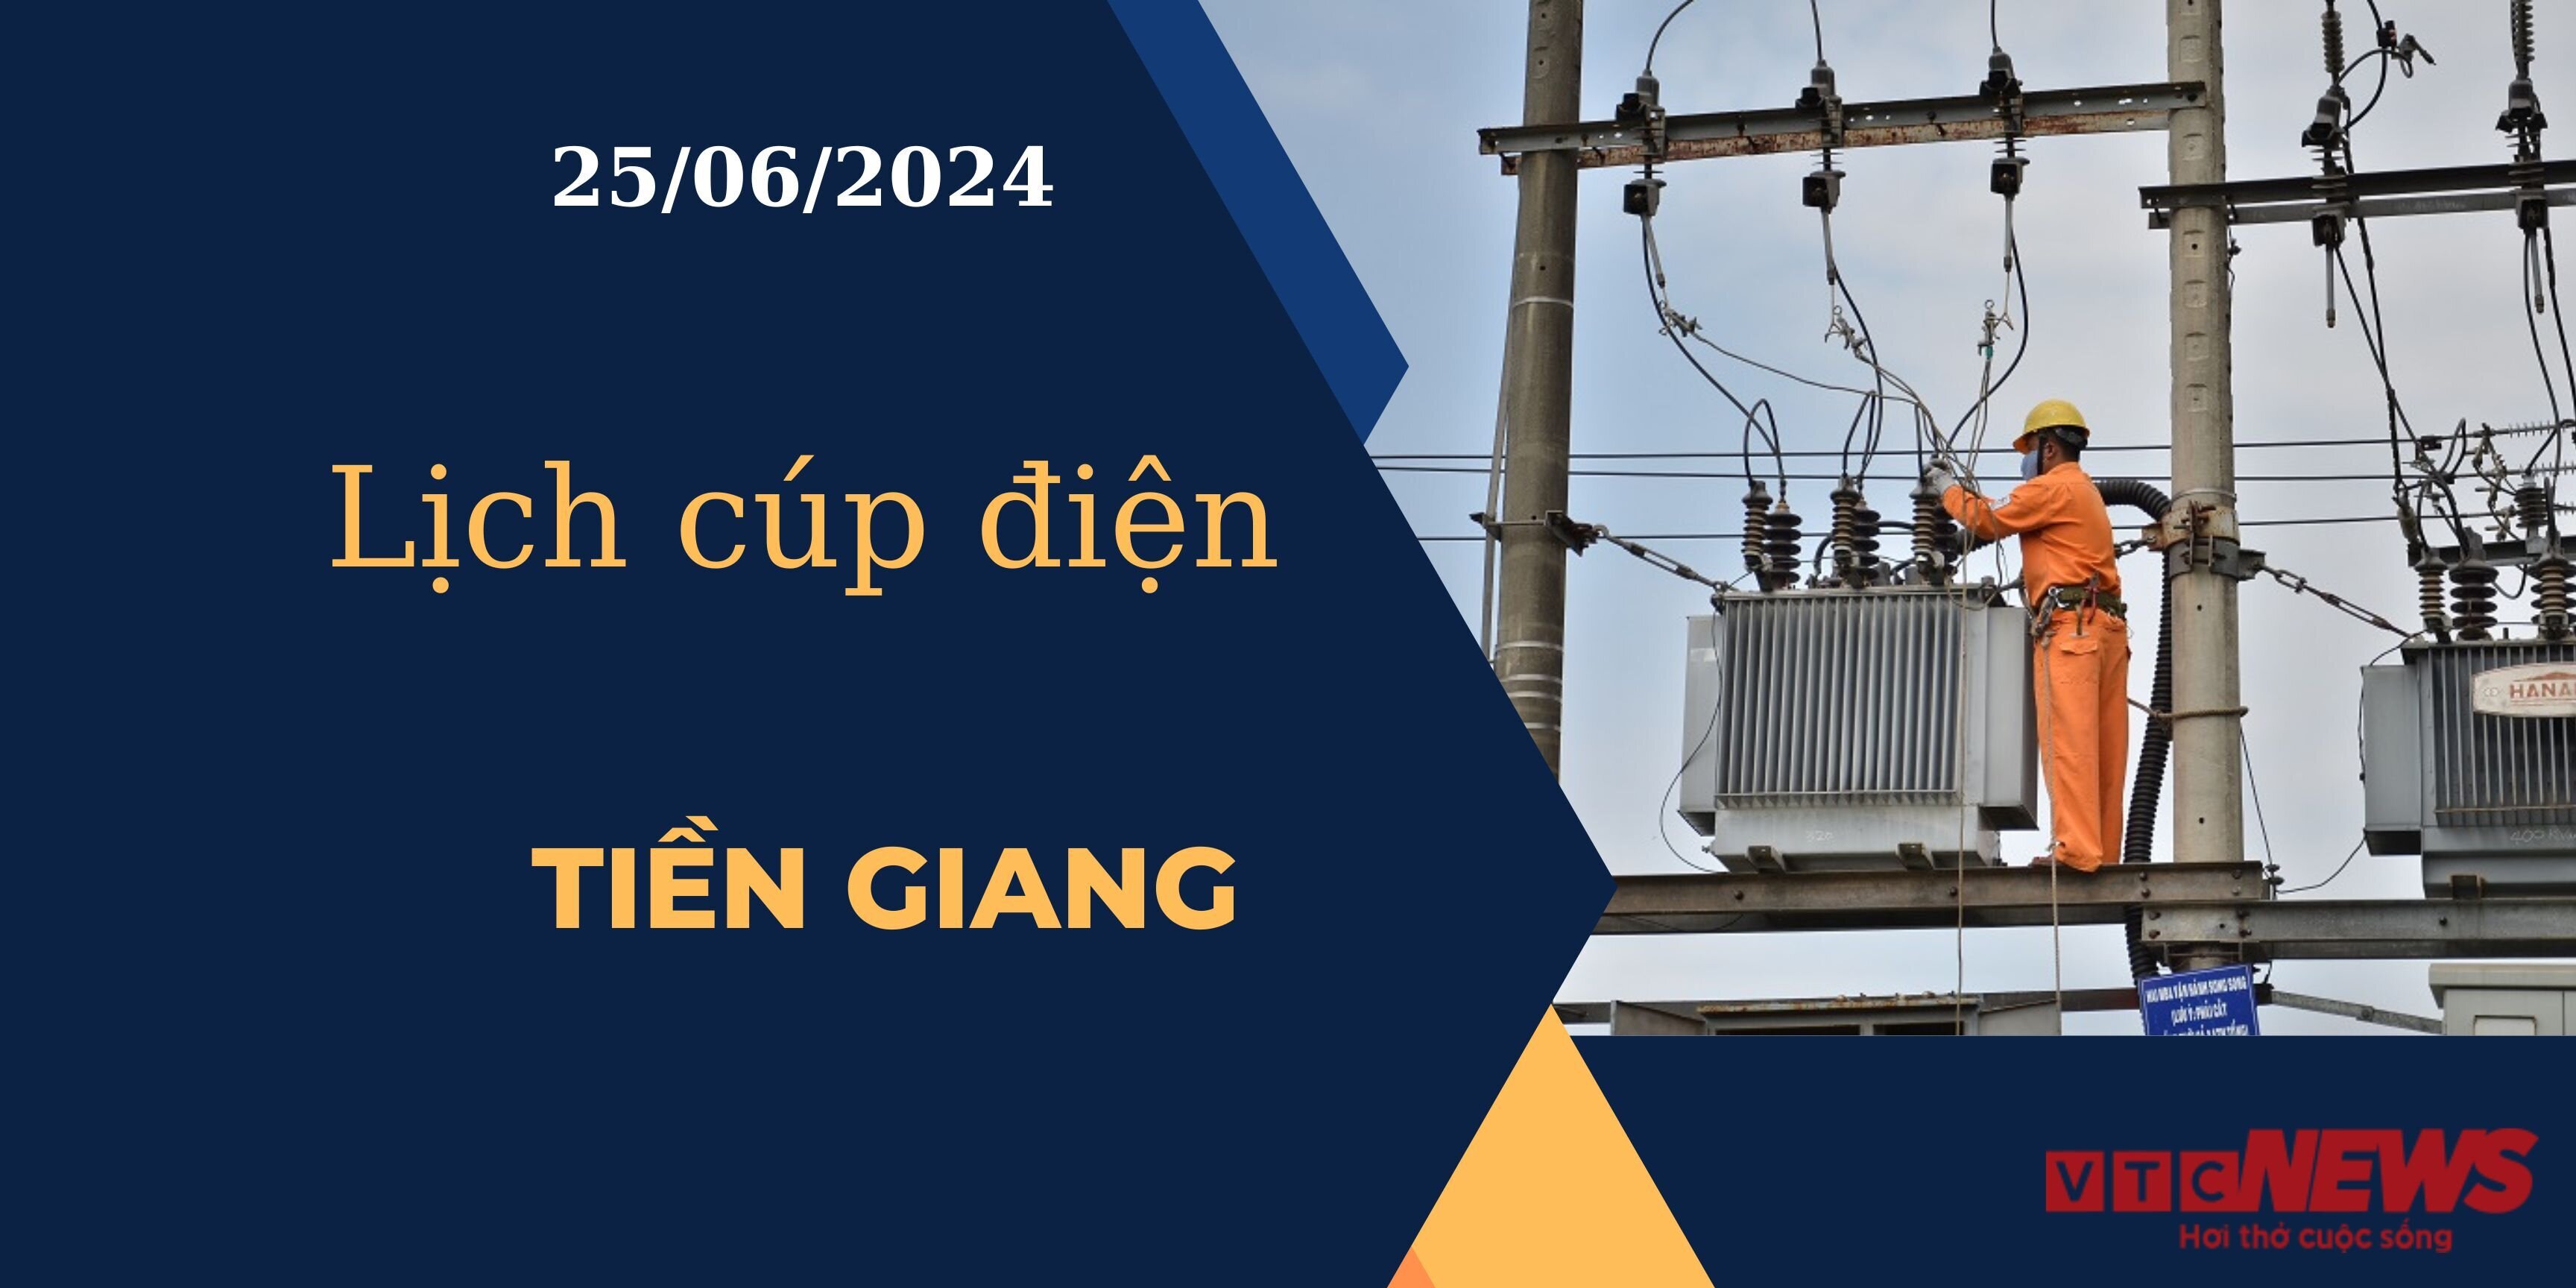 Lịch cúp điện hôm nay ngày 25/06/2024 tại Tiền Giang